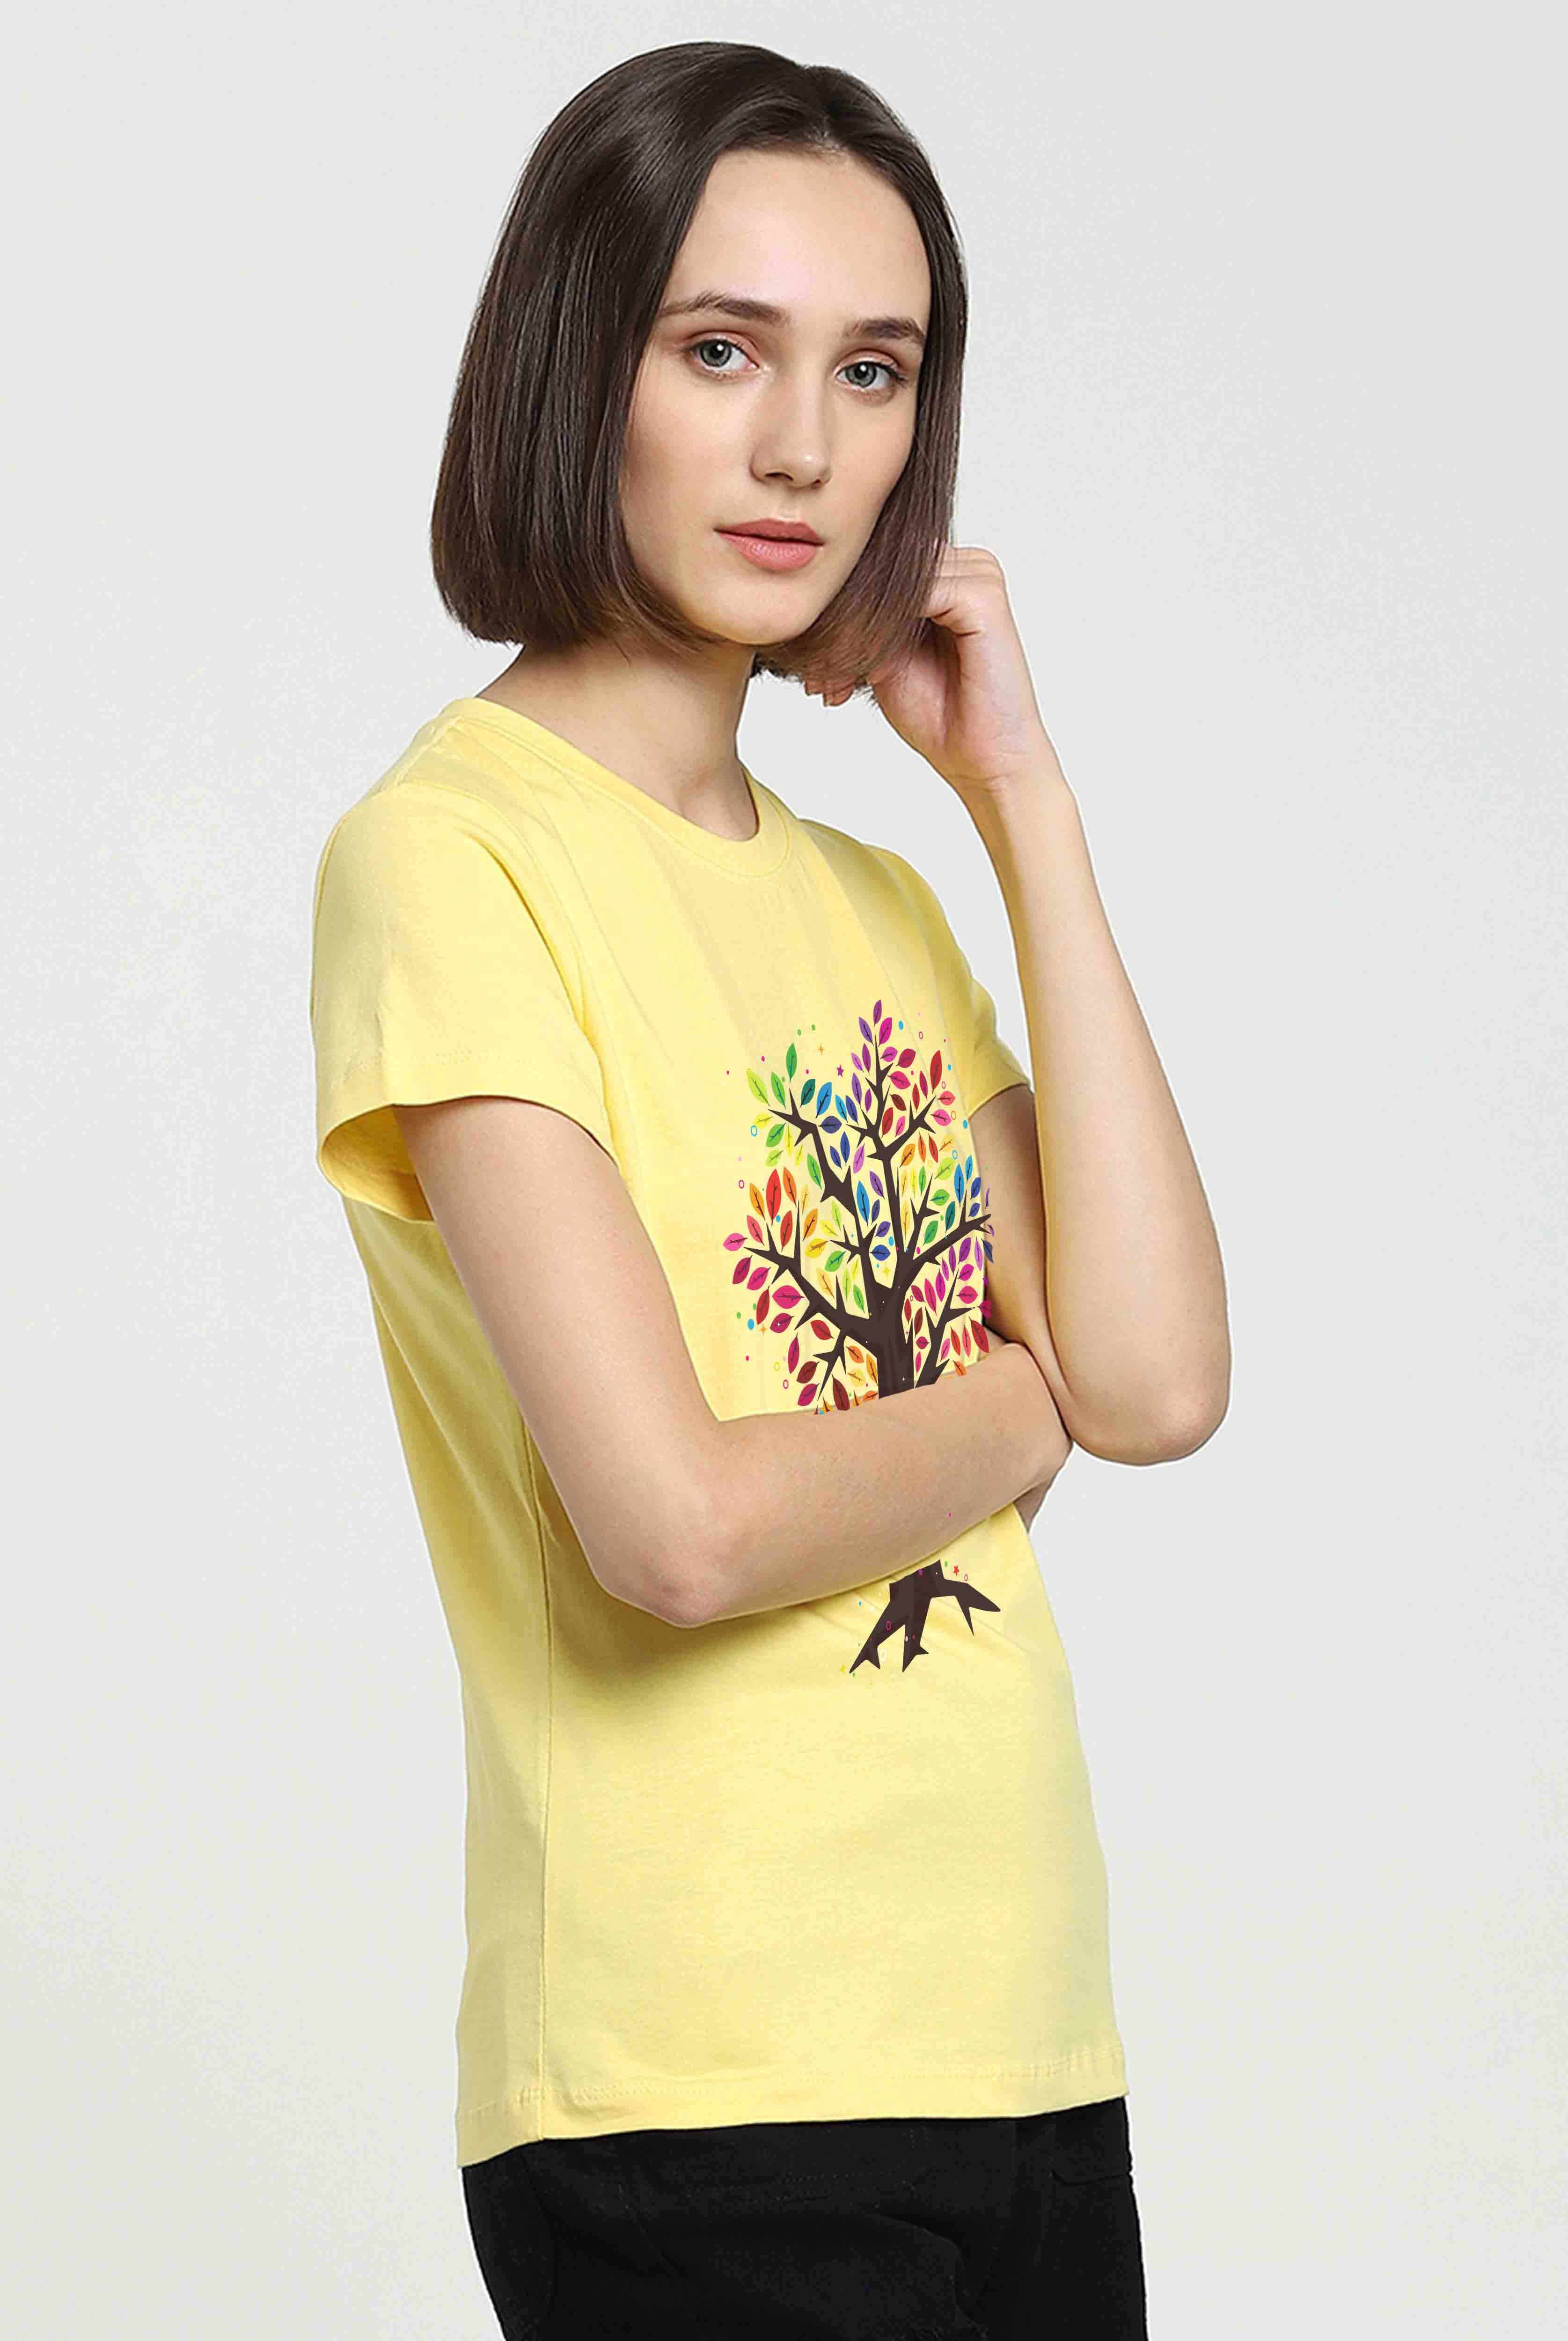 Believe Women's Light Yellow Cotton T-Shirt